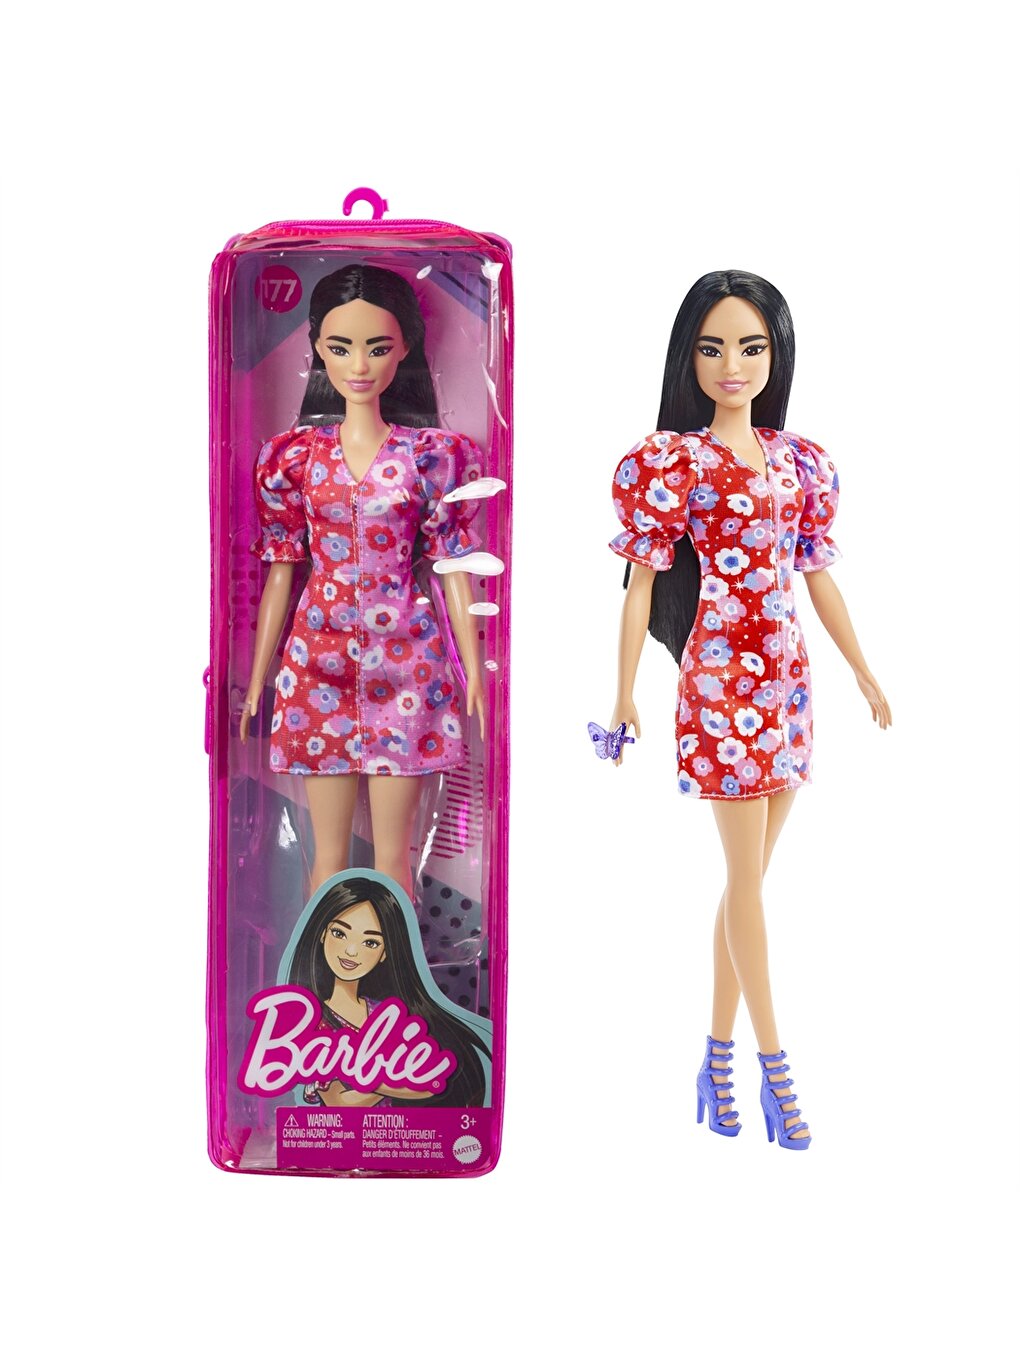 Barbie Licensed Doll For Girl -W23499Z4-M0T - W23499Z4-M0T - LC Waikiki